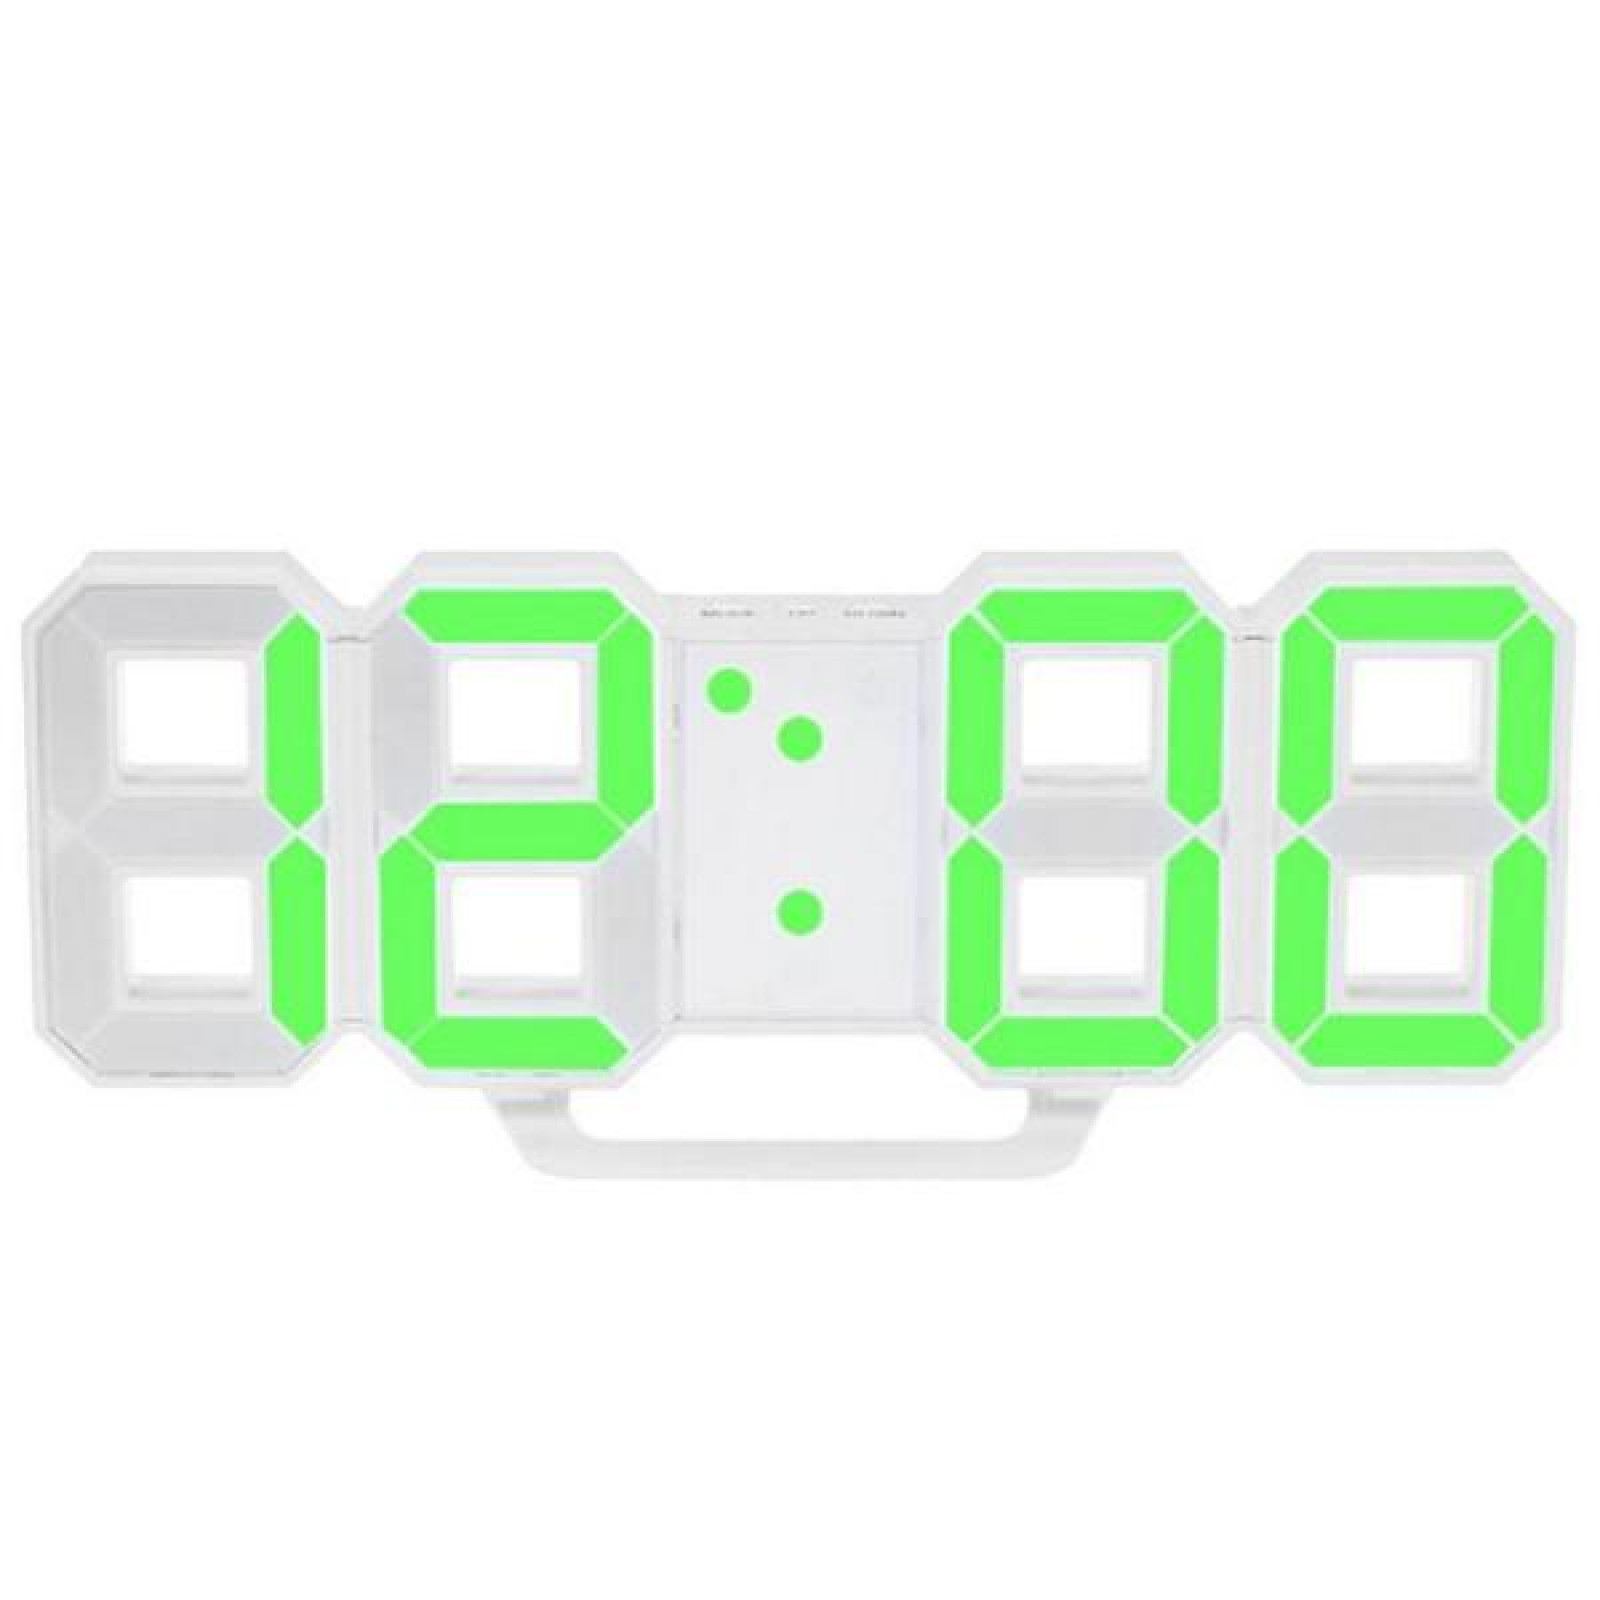 Электронные настольные часы с большими цифрами LY 1089 S с будильником, термометром и LED подсветкой Зеленый 179340